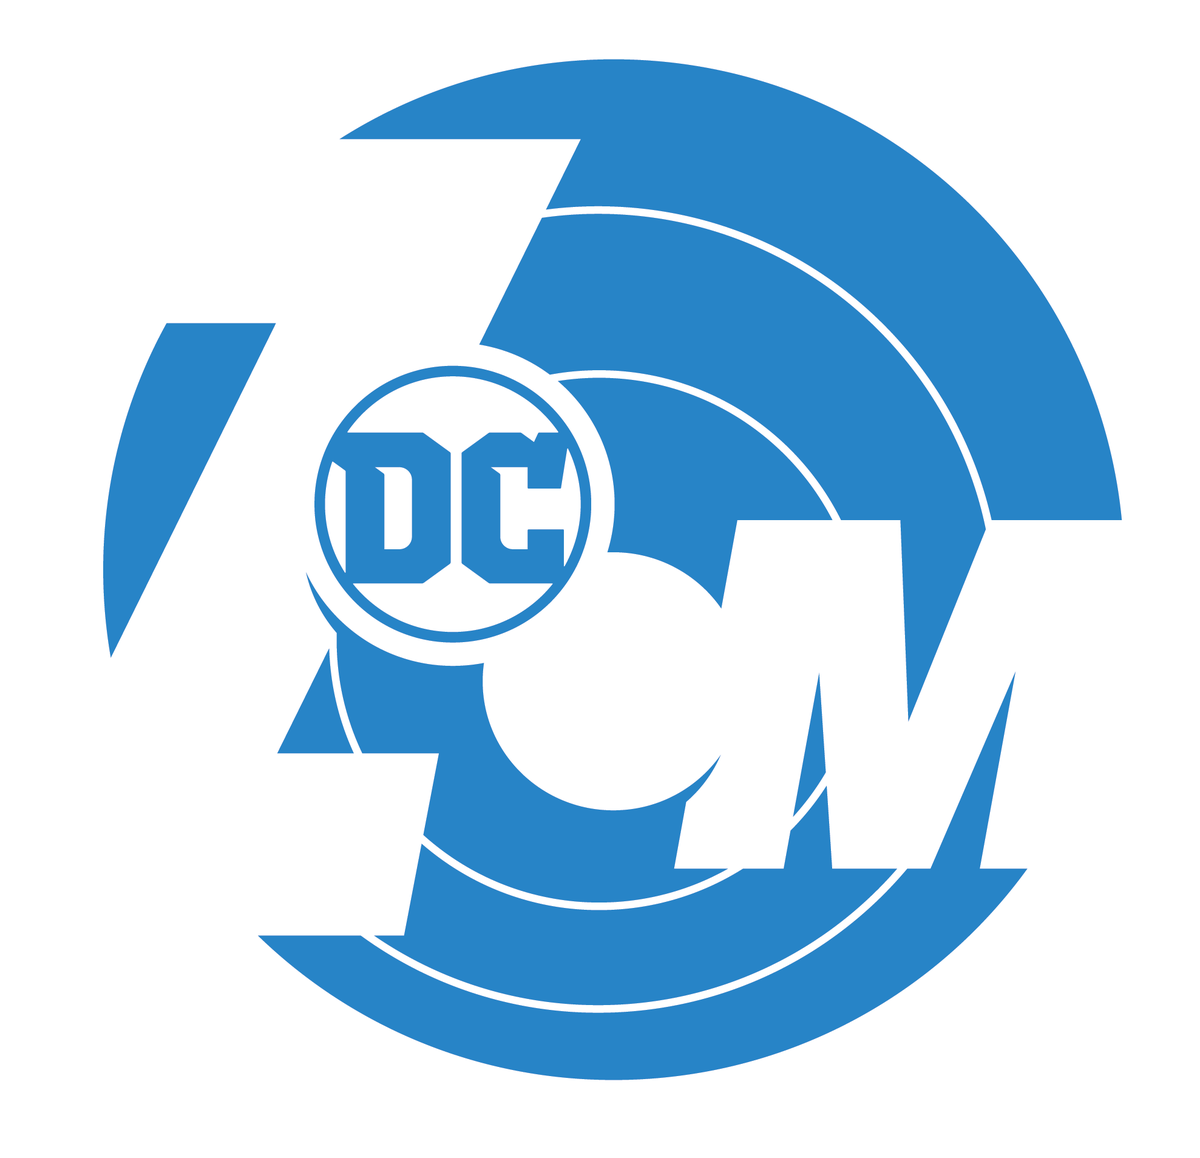 CD Zoom logo